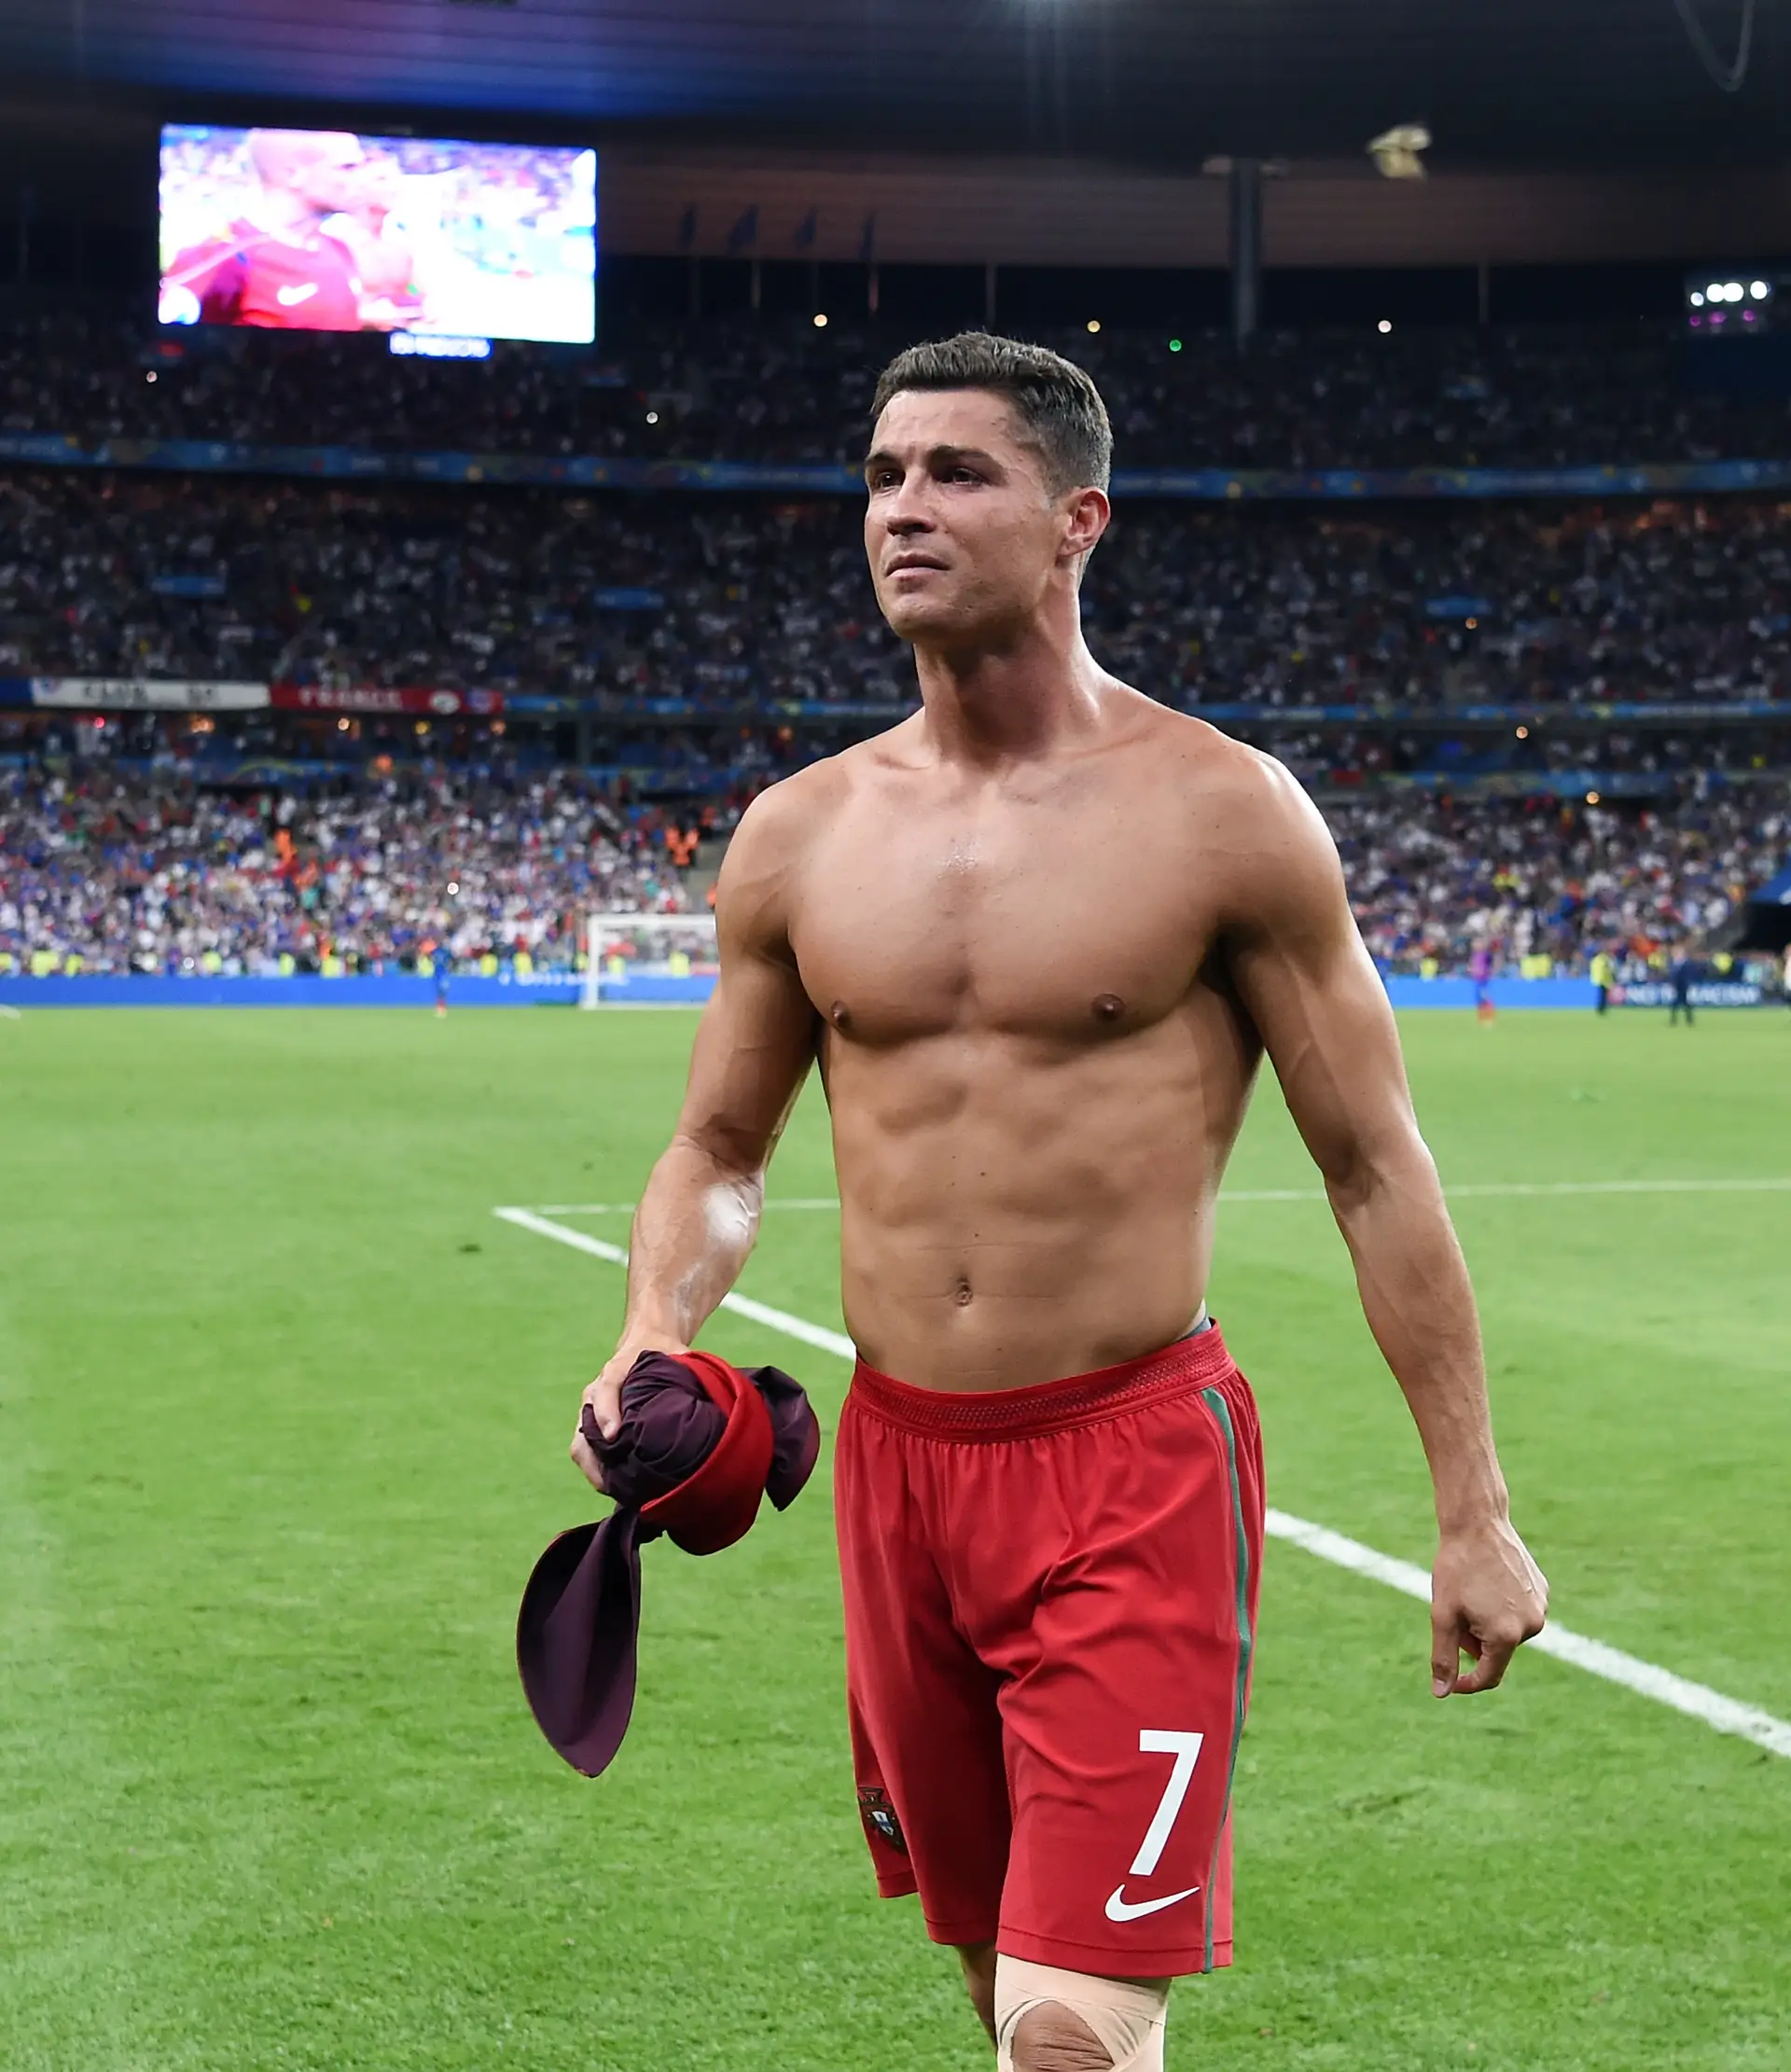 Por ideia de Carlos Moedas, Ronaldo vai receber a Medalha de Honra da  Cidade: “É um grande lisboeta e isso nunca foi reconhecido”